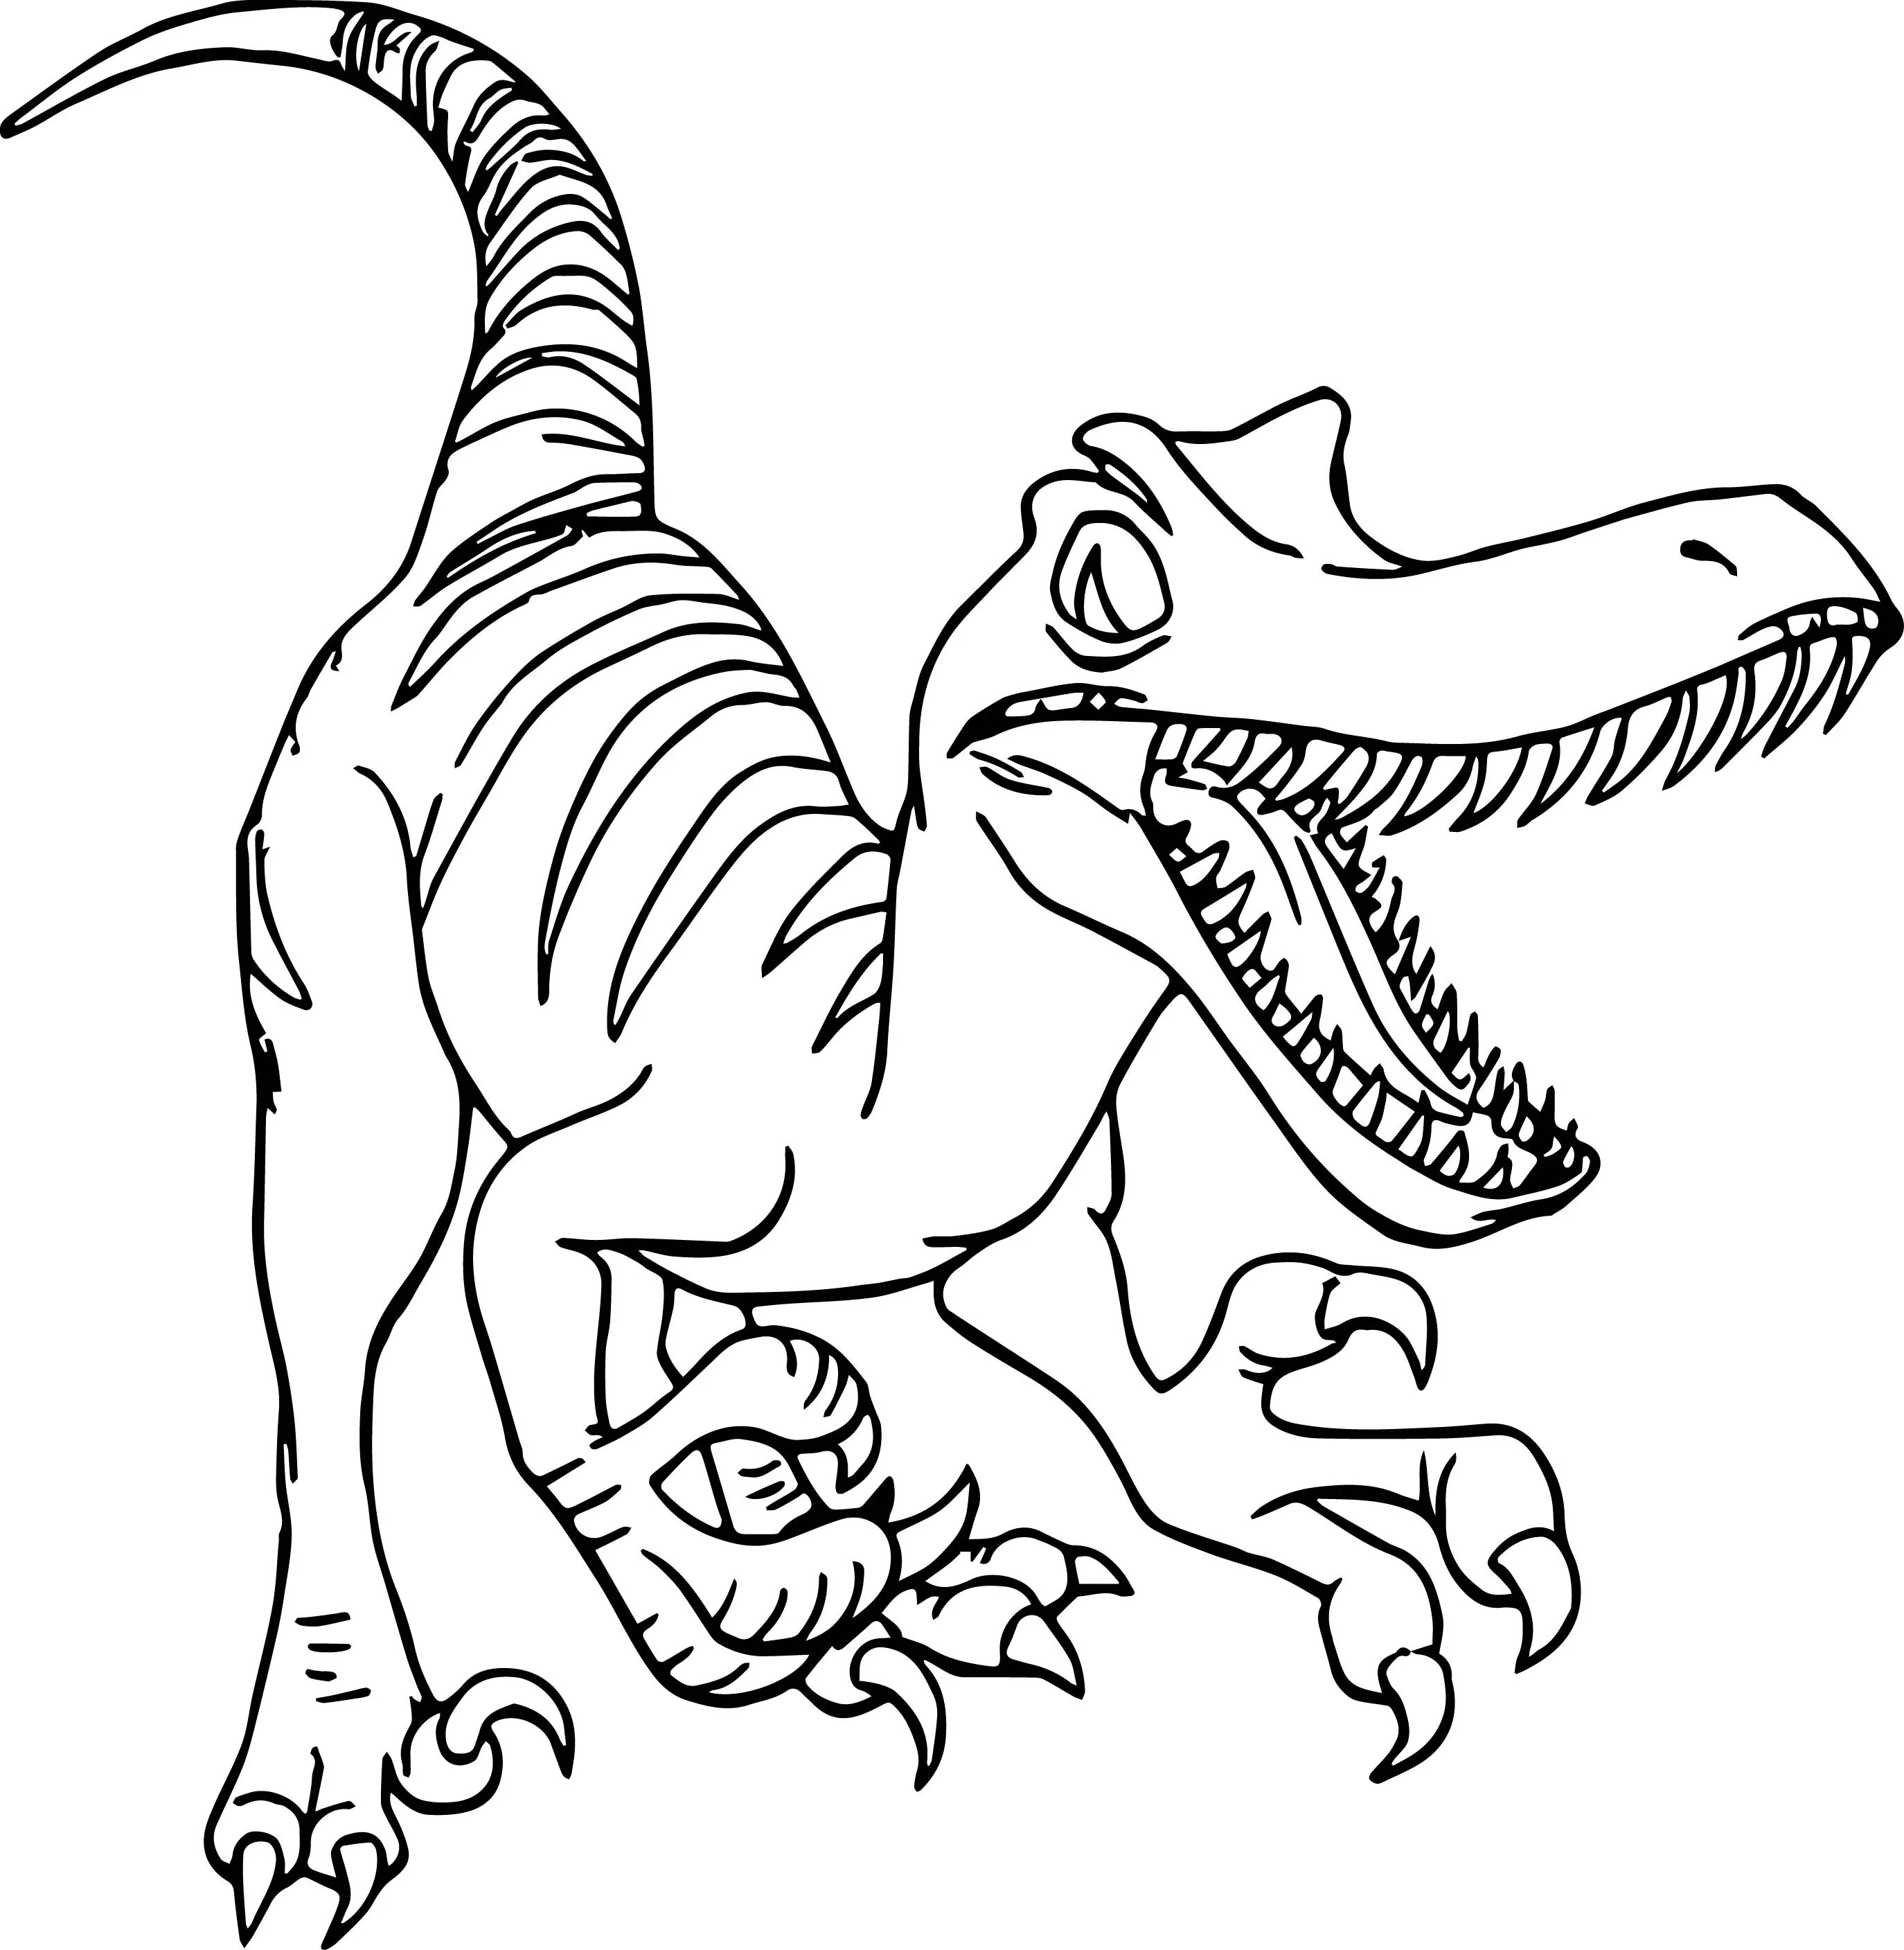 Раскраски динозавры а4. Раскраска Велоцираптор Блю. Раскраски динозавры Велоцираптор. Раскраска динозавр Раптор. Динозавры раскраски для детей для печати.